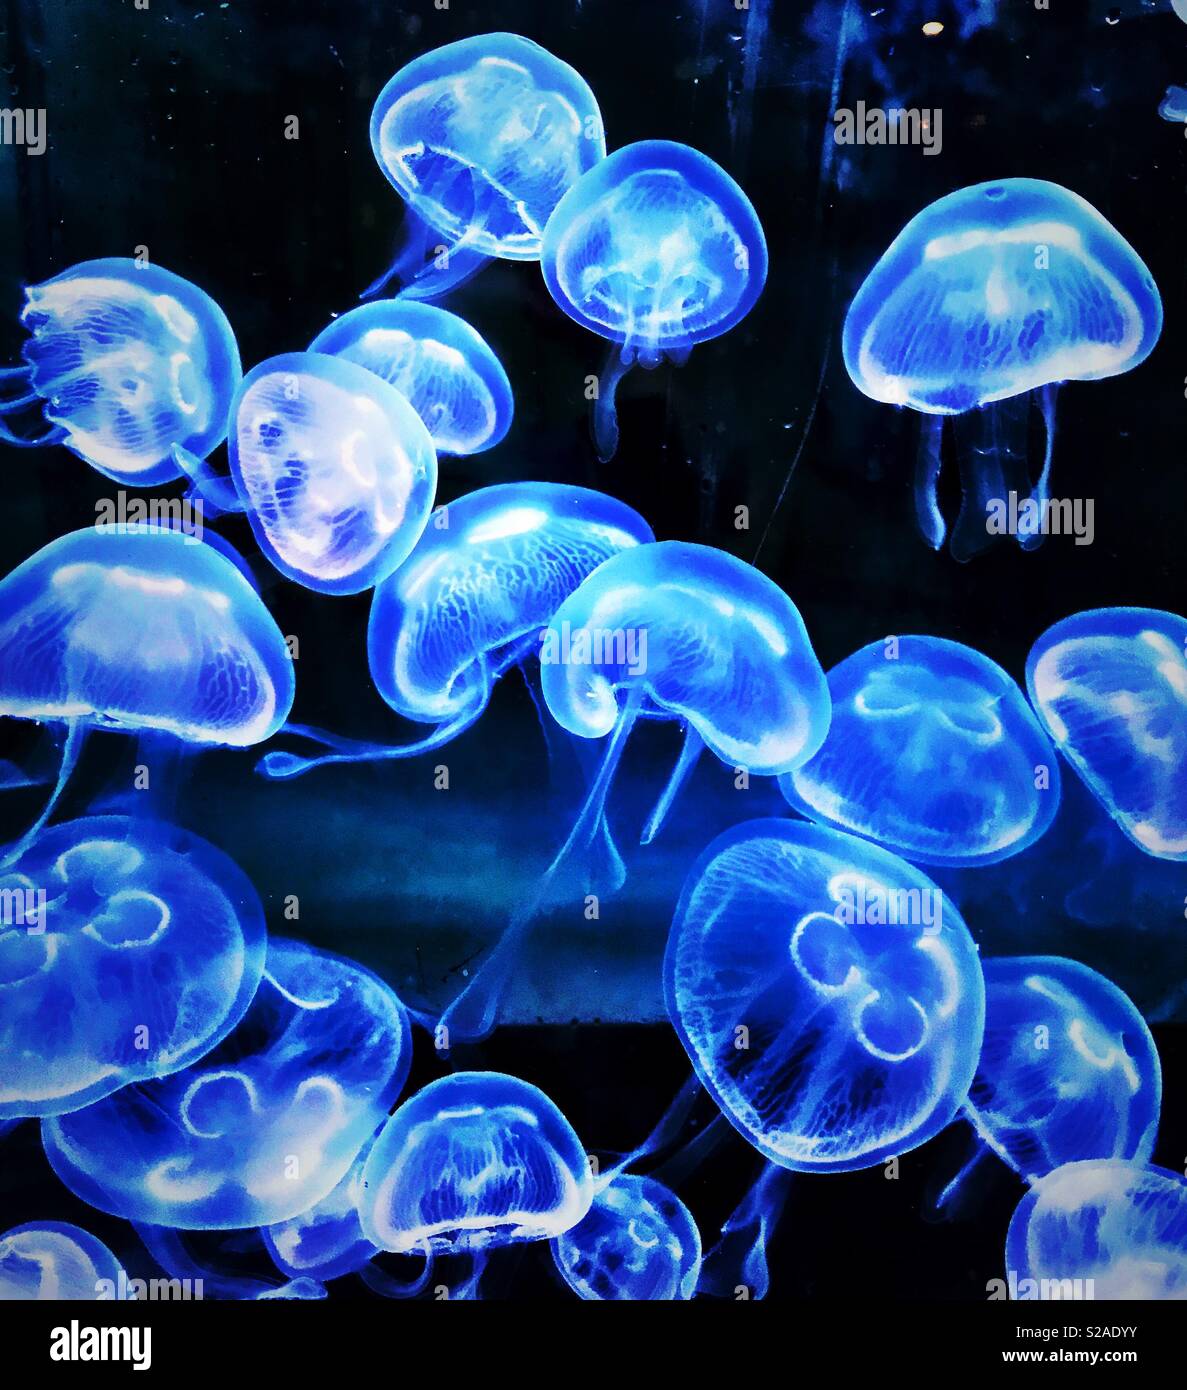 Moon jelly fish Stock Photo